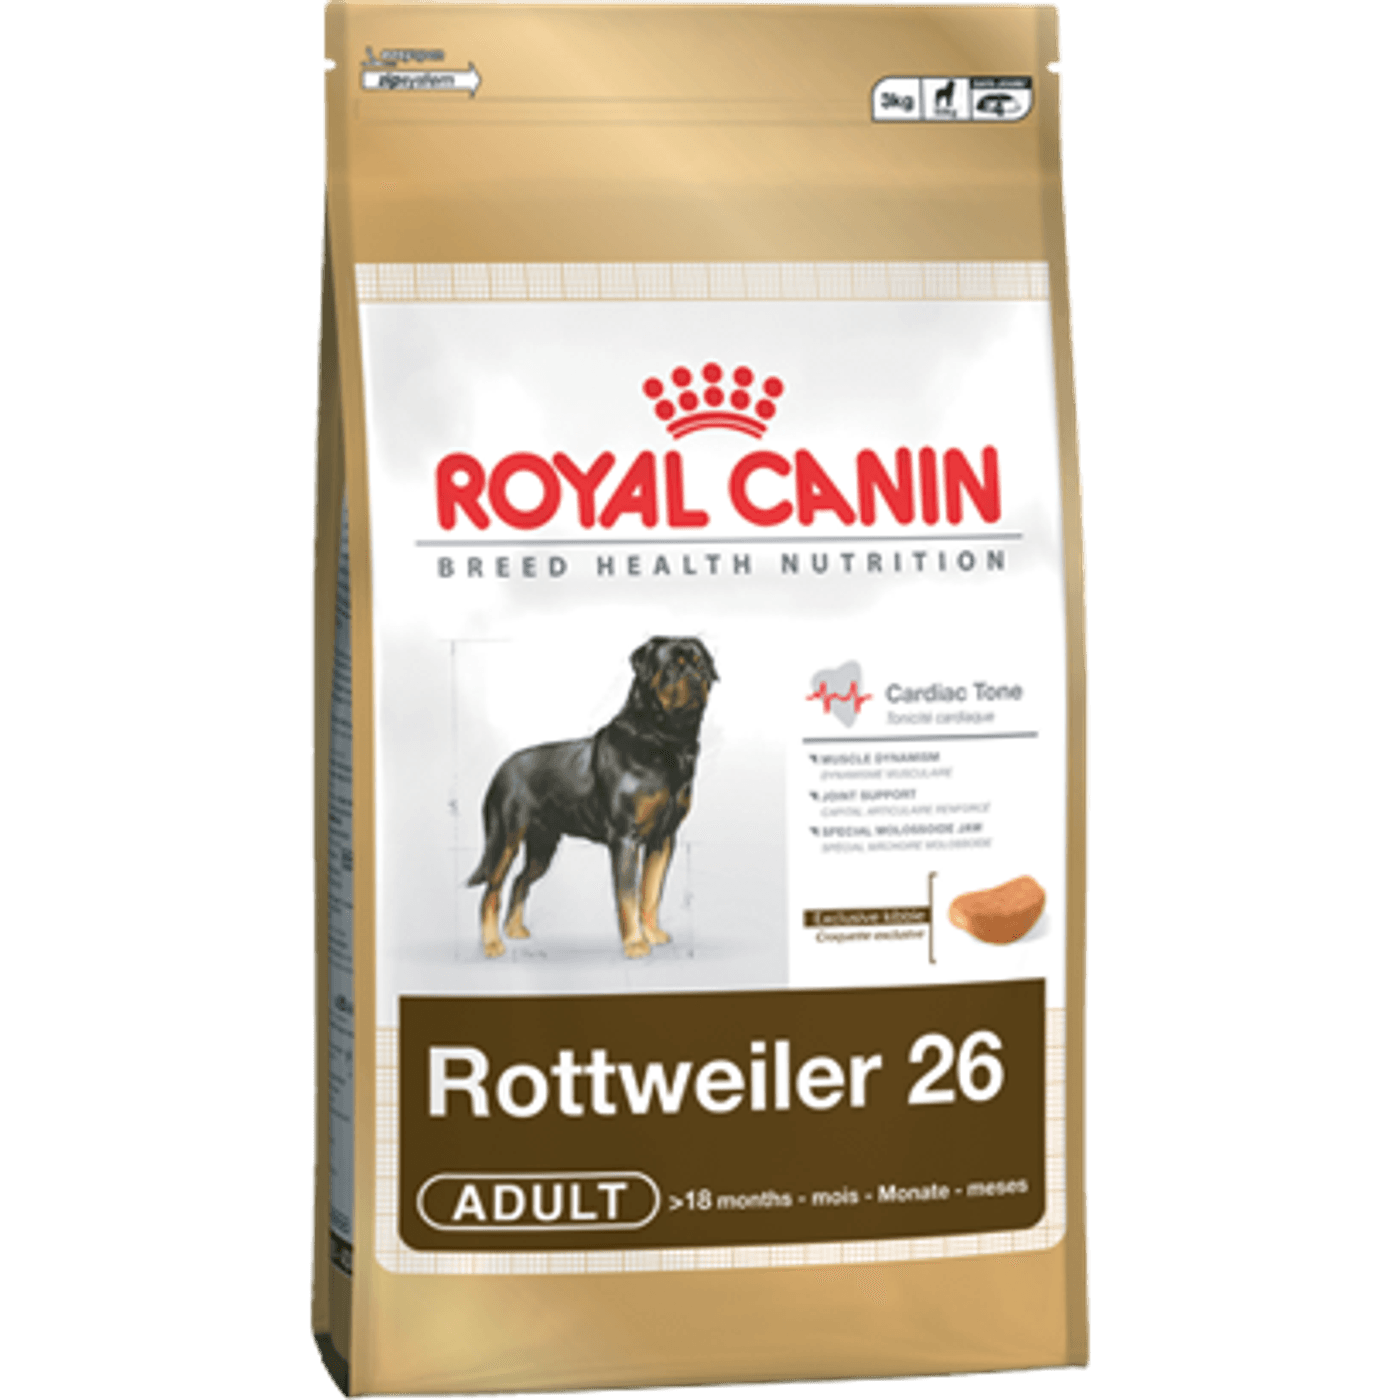 Rottweiler-Adult_packshot_site